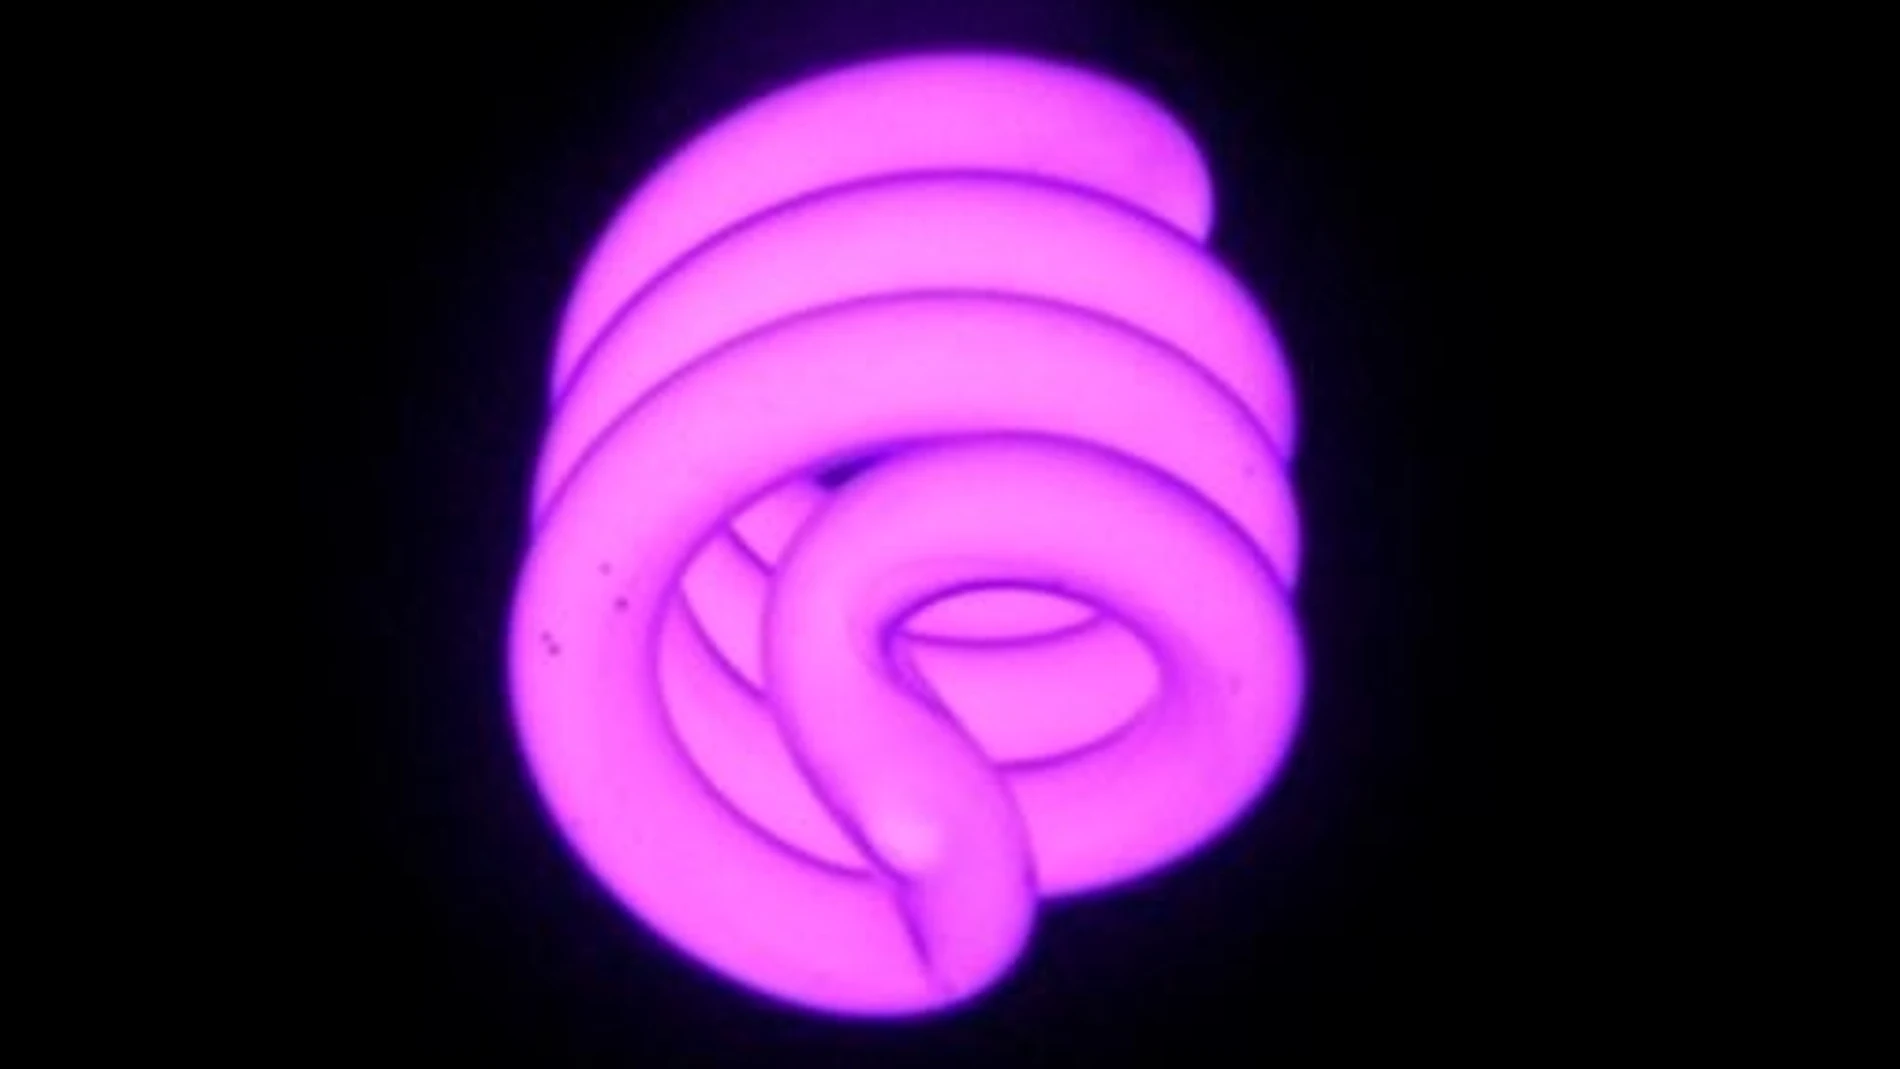 Lámpara fluorescente de luz ultravioletaCC BY 2.5 (Foto de ARCHIVO)26/4/2019